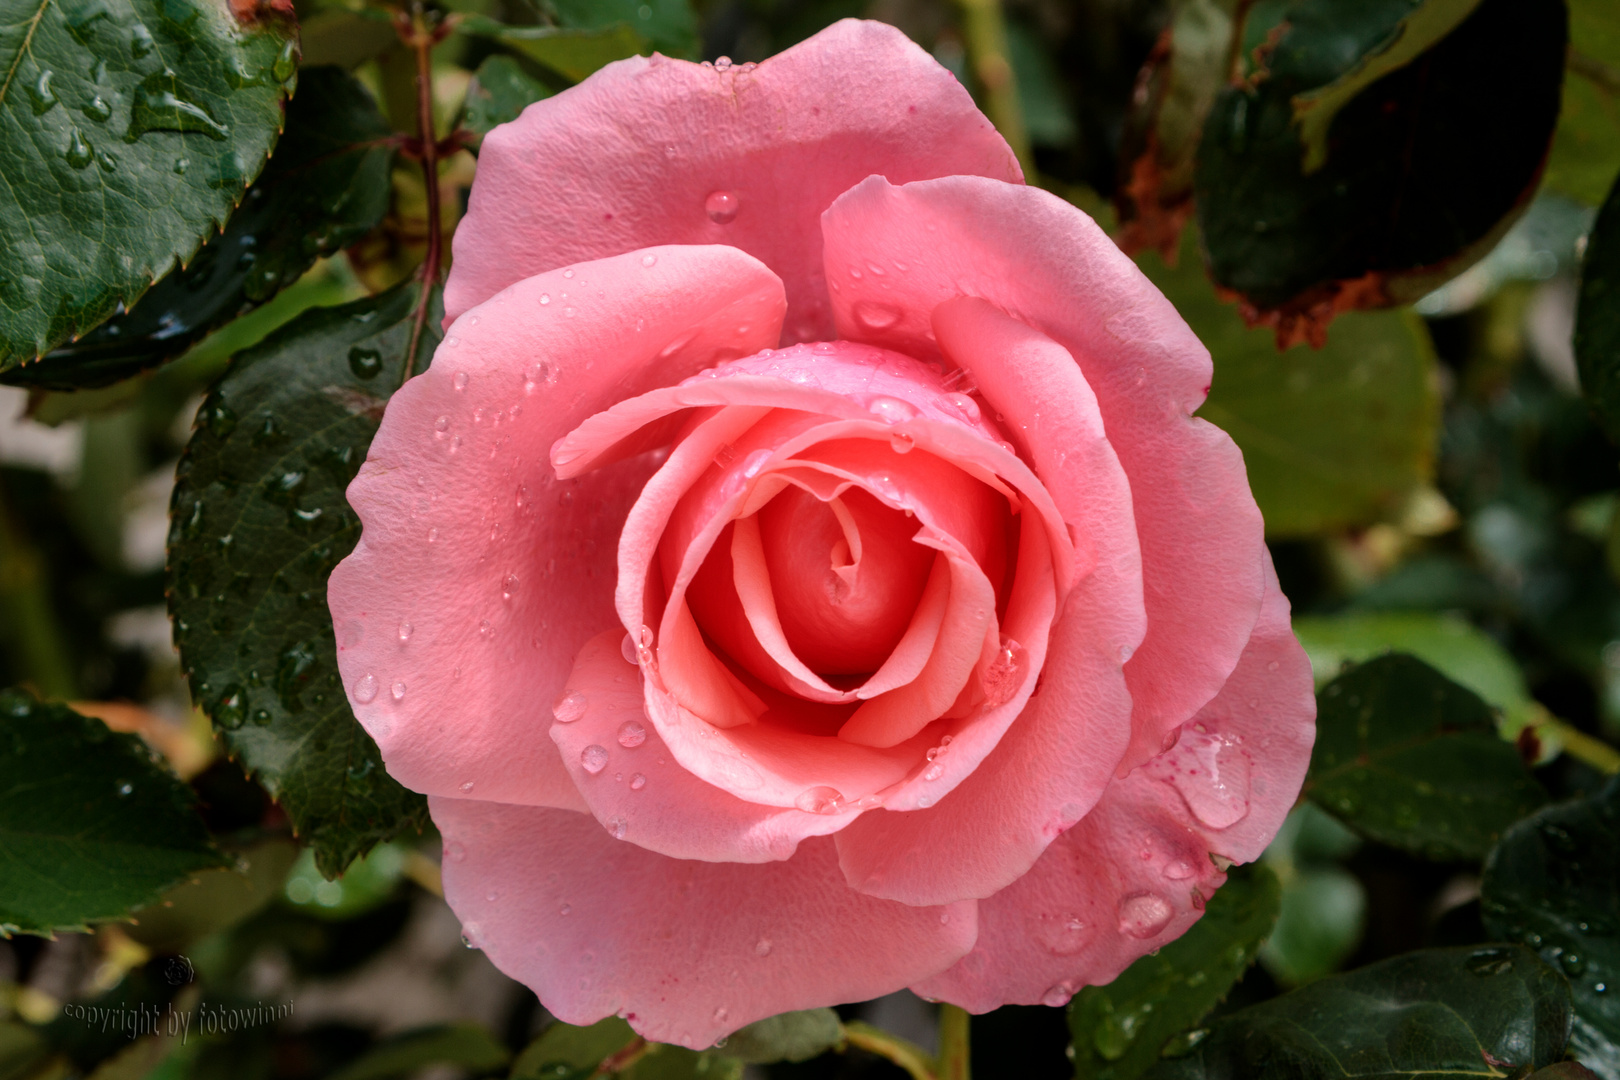 Rose 32